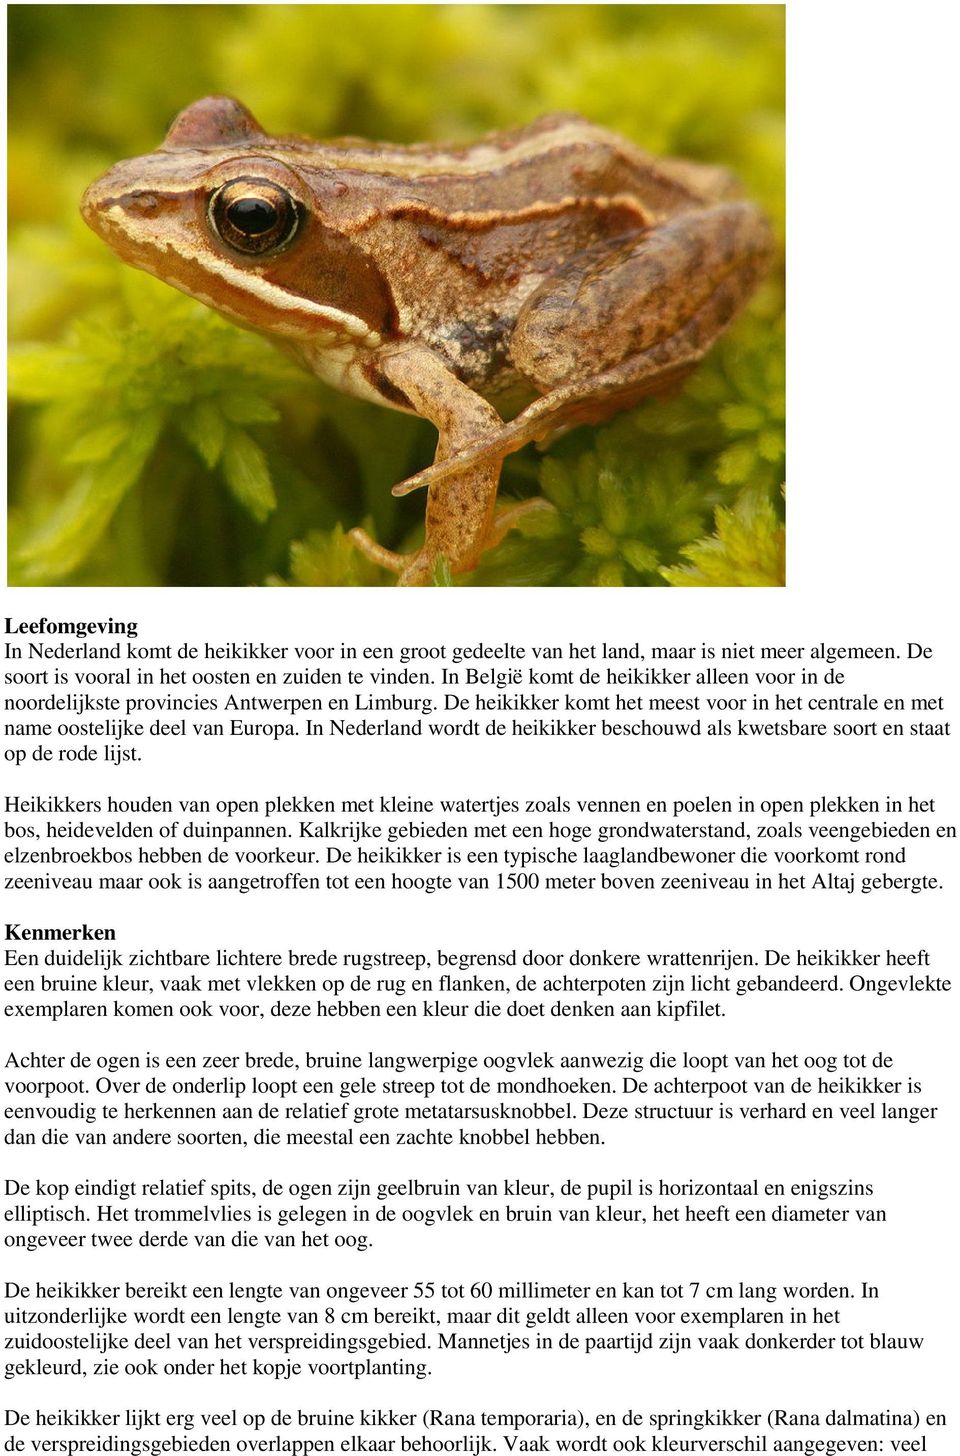 In Nederland wordt de heikikker beschouwd als kwetsbare soort en staat op de rode lijst.